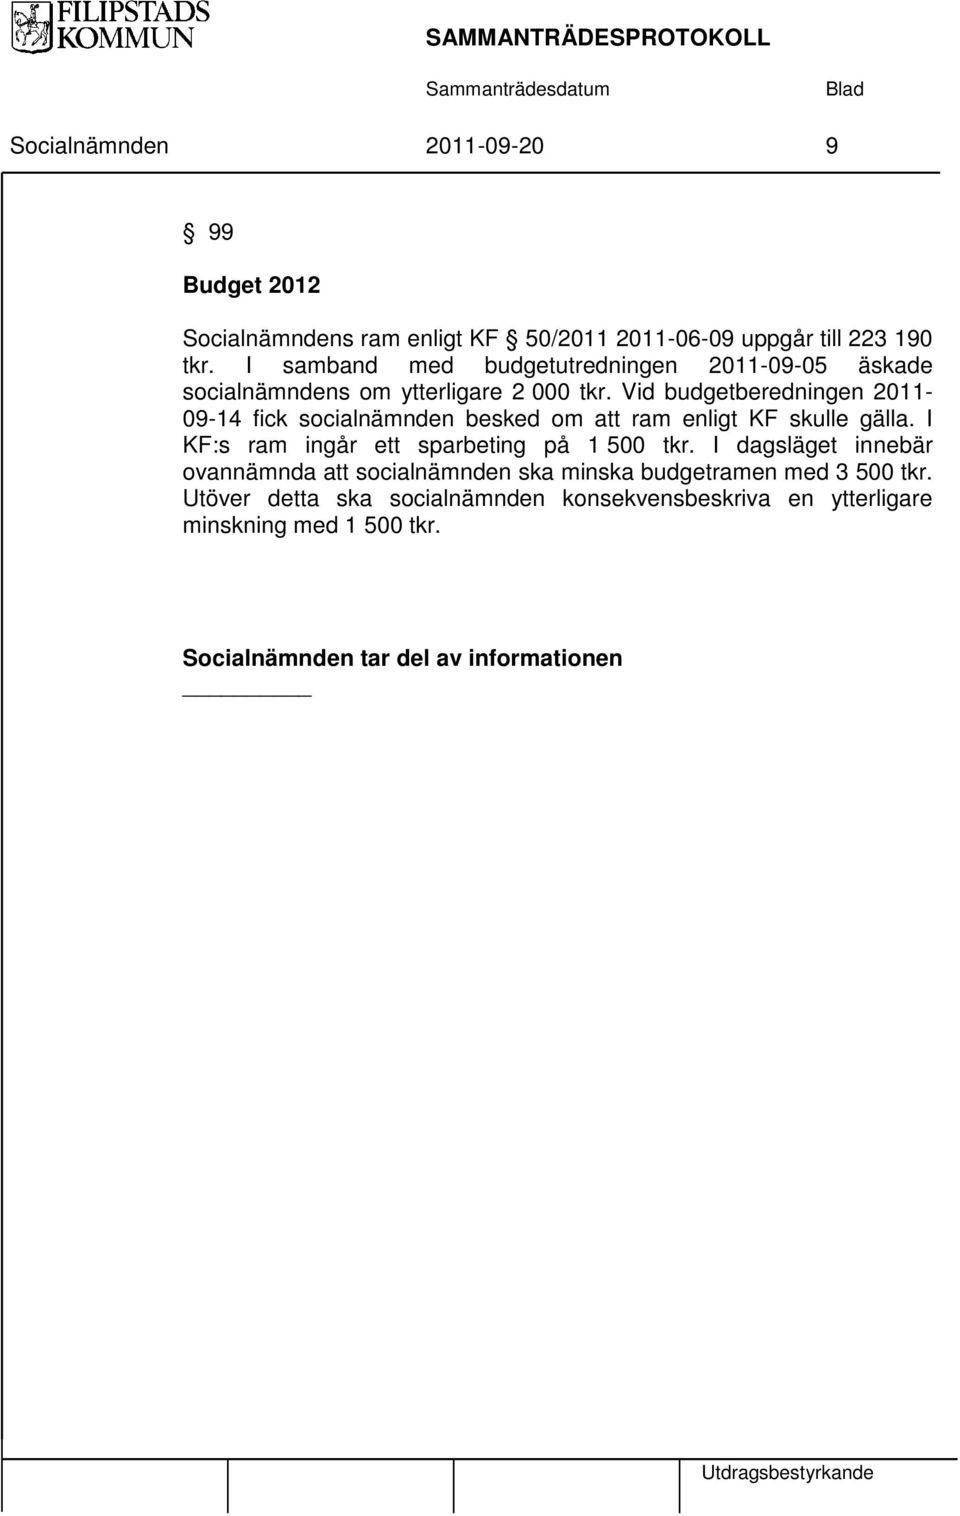 Vid budgetberedningen 2011-09-14 fick socialnämnden besked om ram enligt KF skulle gälla. I KF:s ram ingår ett sparbeting på 1 500 tkr.